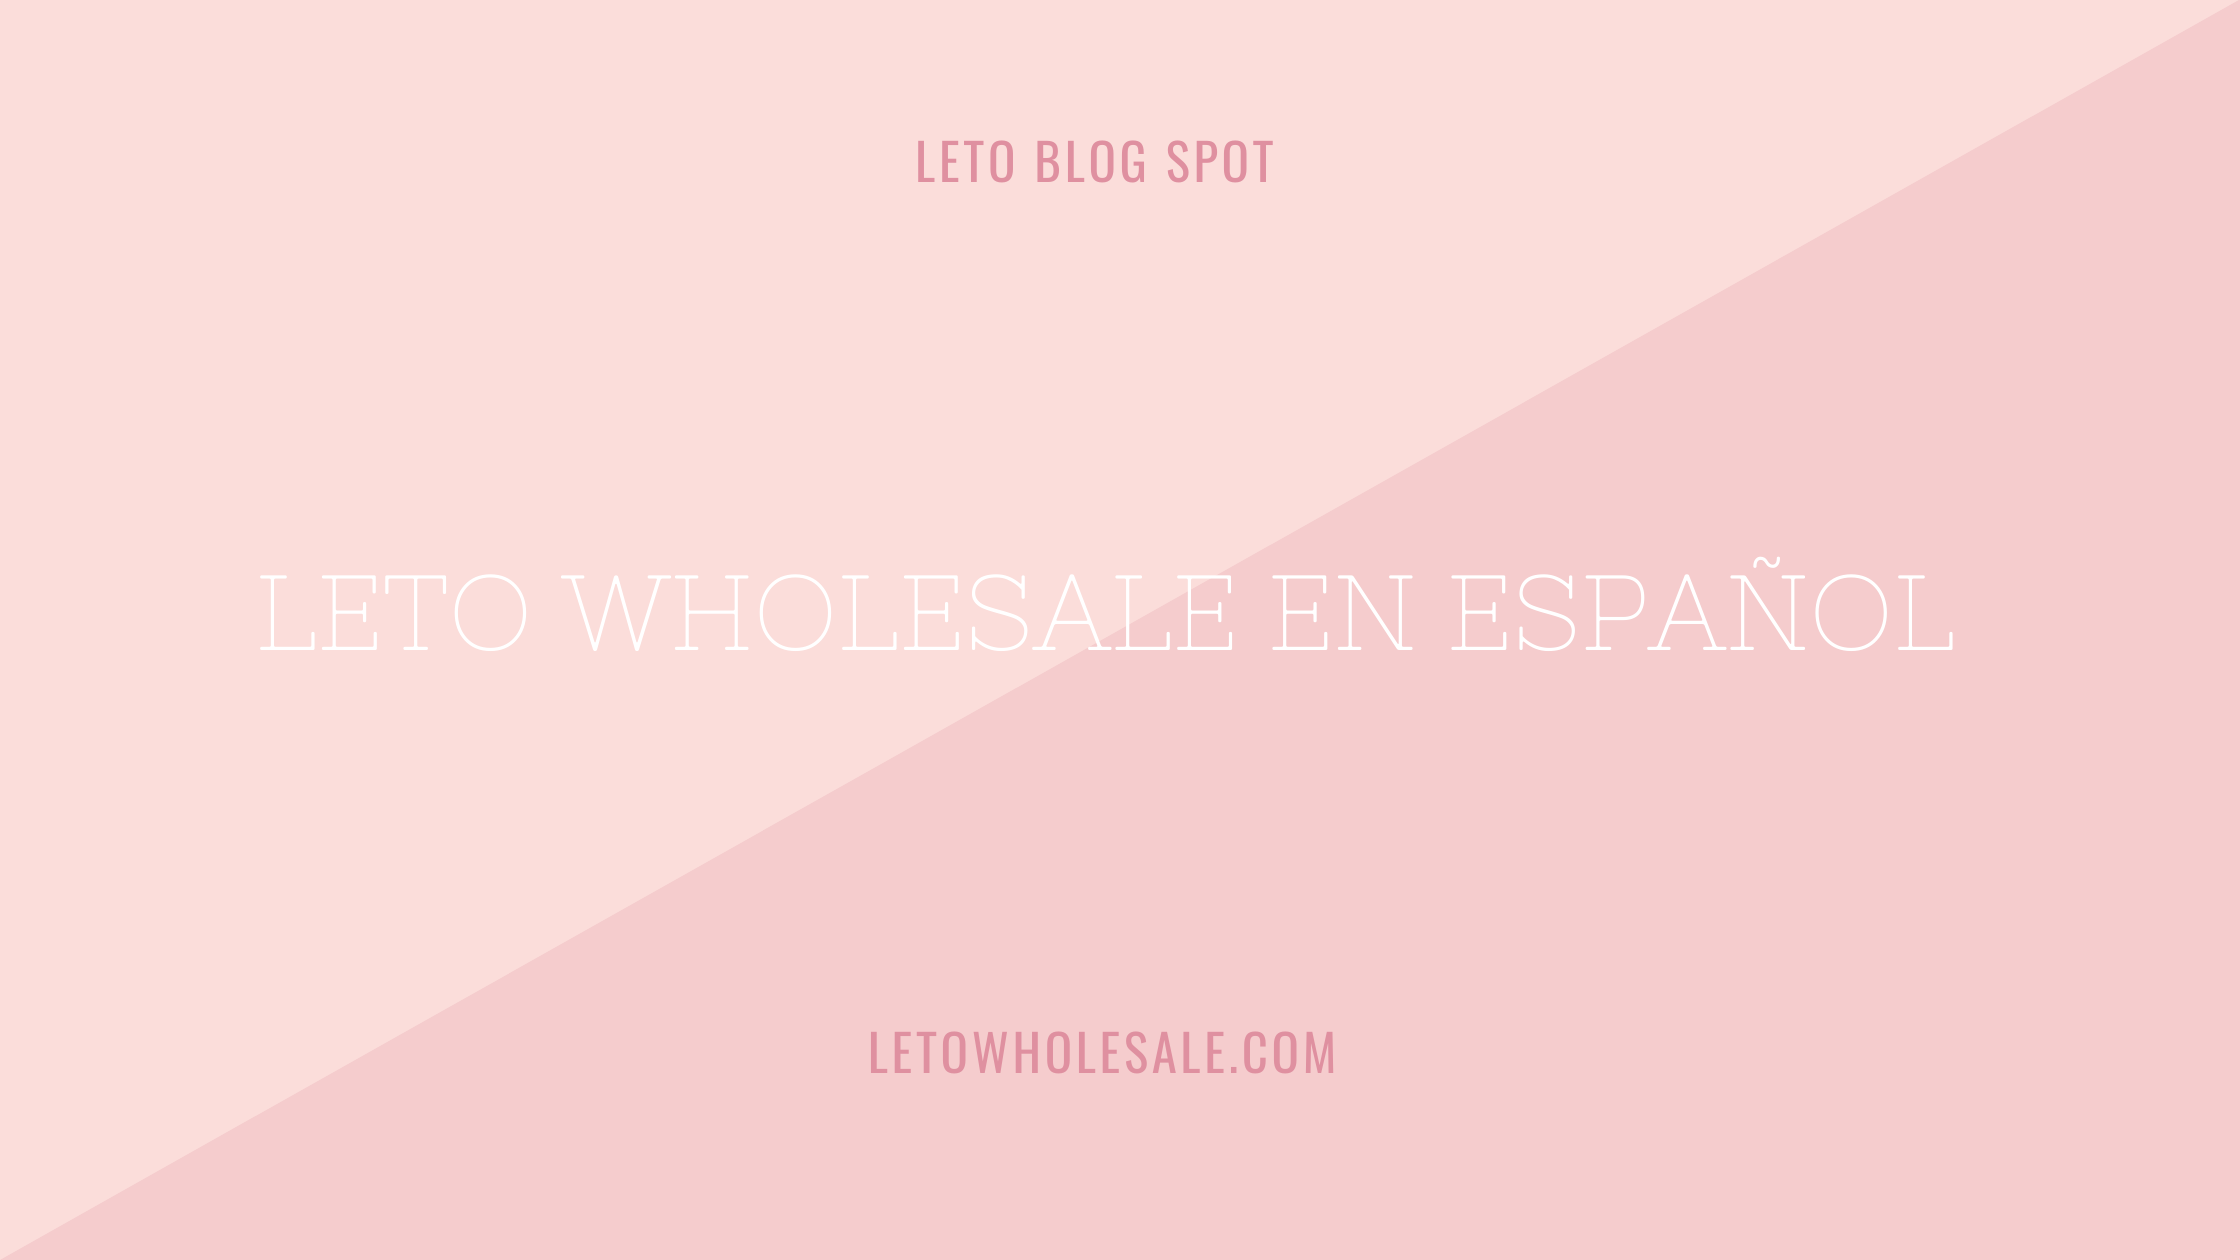 Leto Wholesale Español Announcement